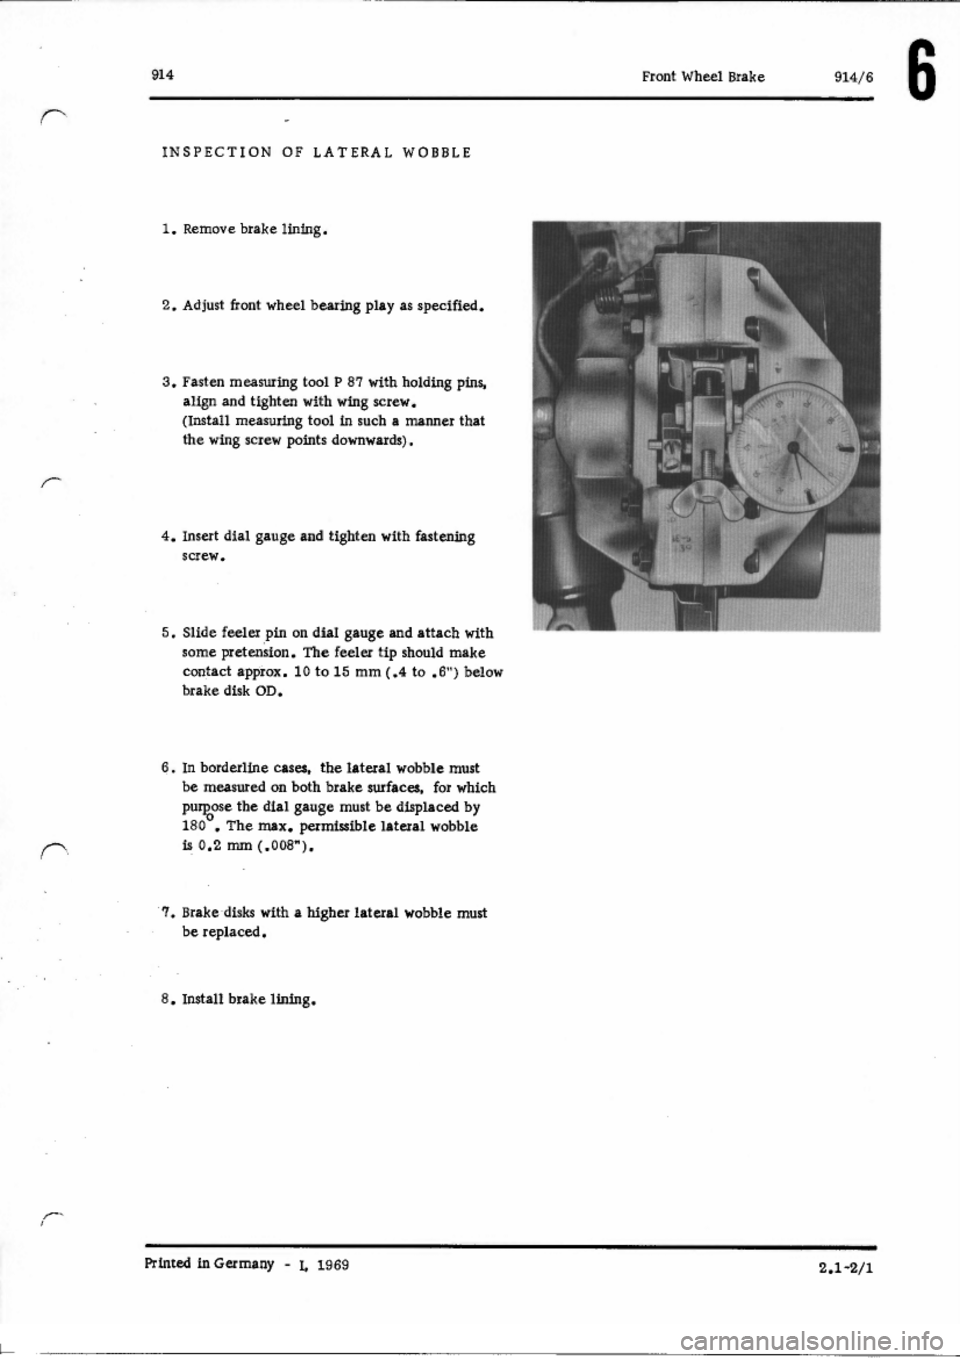 PORSCHE 914 1971 1.G Brakes Service Manual 